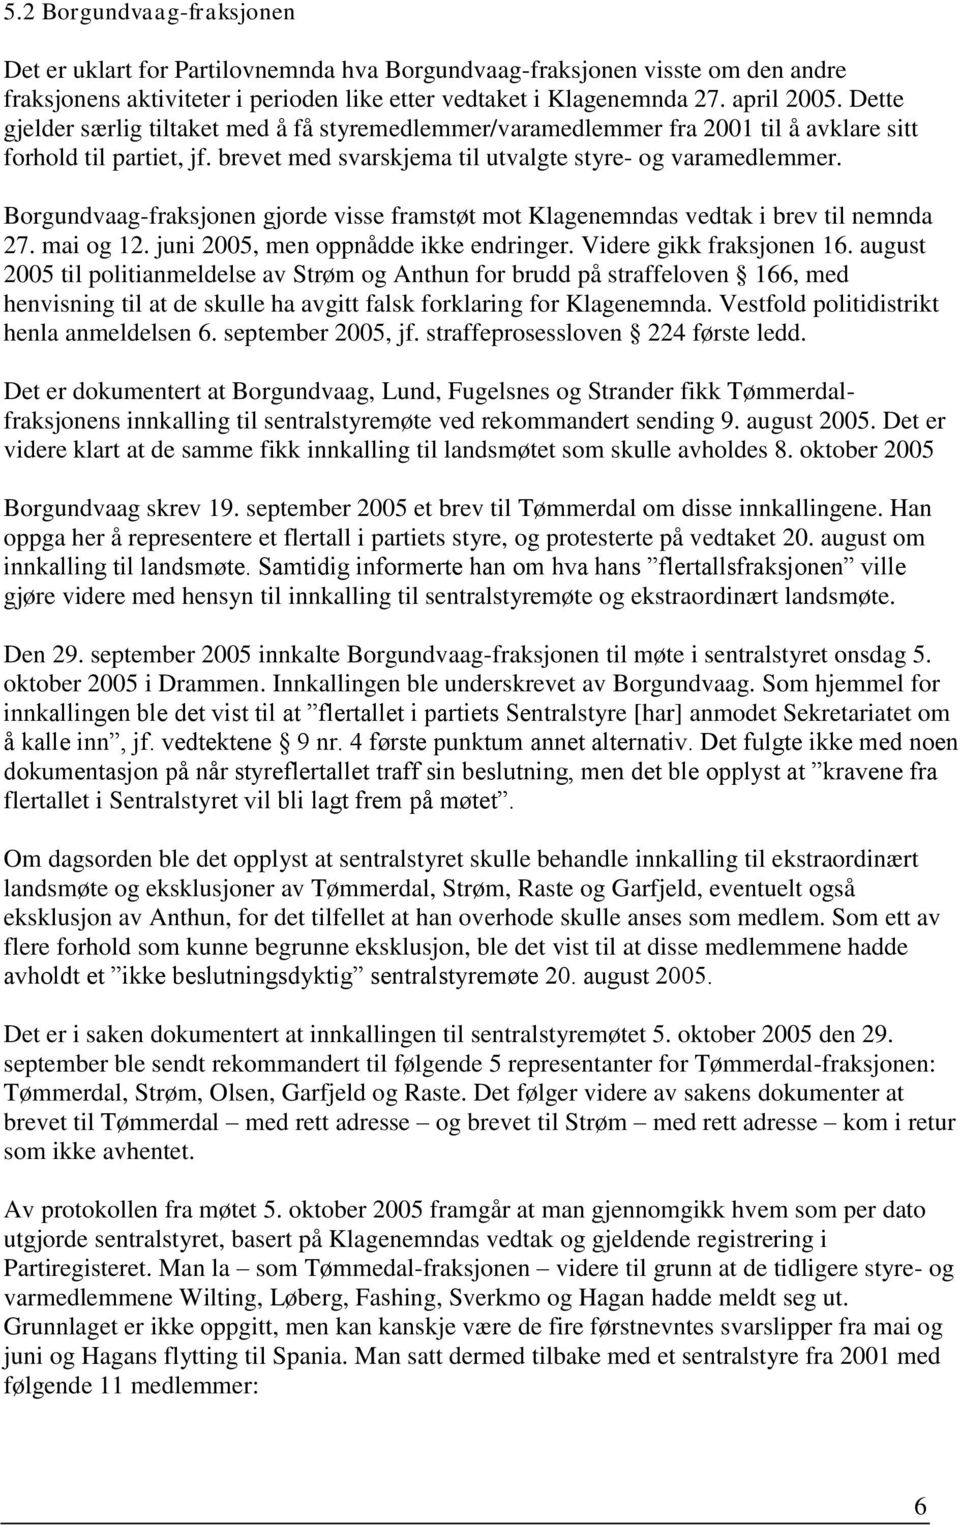 Borgundvaag-fraksjonen gjorde visse framstøt mot Klagenemndas vedtak i brev til nemnda 27. mai og 12. juni 2005, men oppnådde ikke endringer. Videre gikk fraksjonen 16.